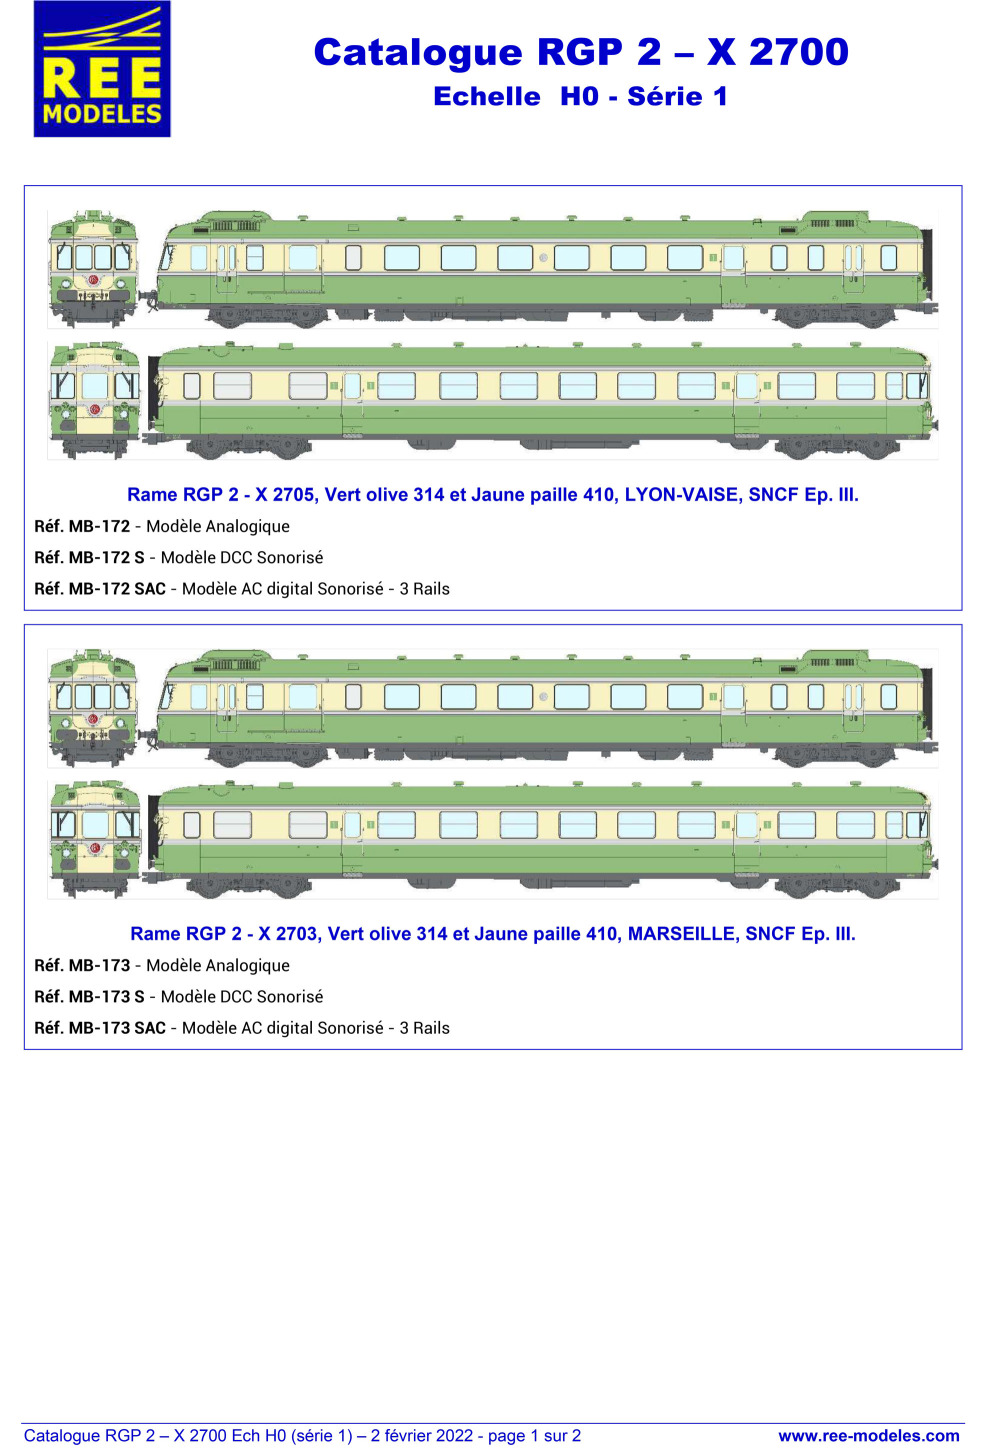 Rails Europ Express - SNCF - RGP 2 - X 2700 diesel multiple unit